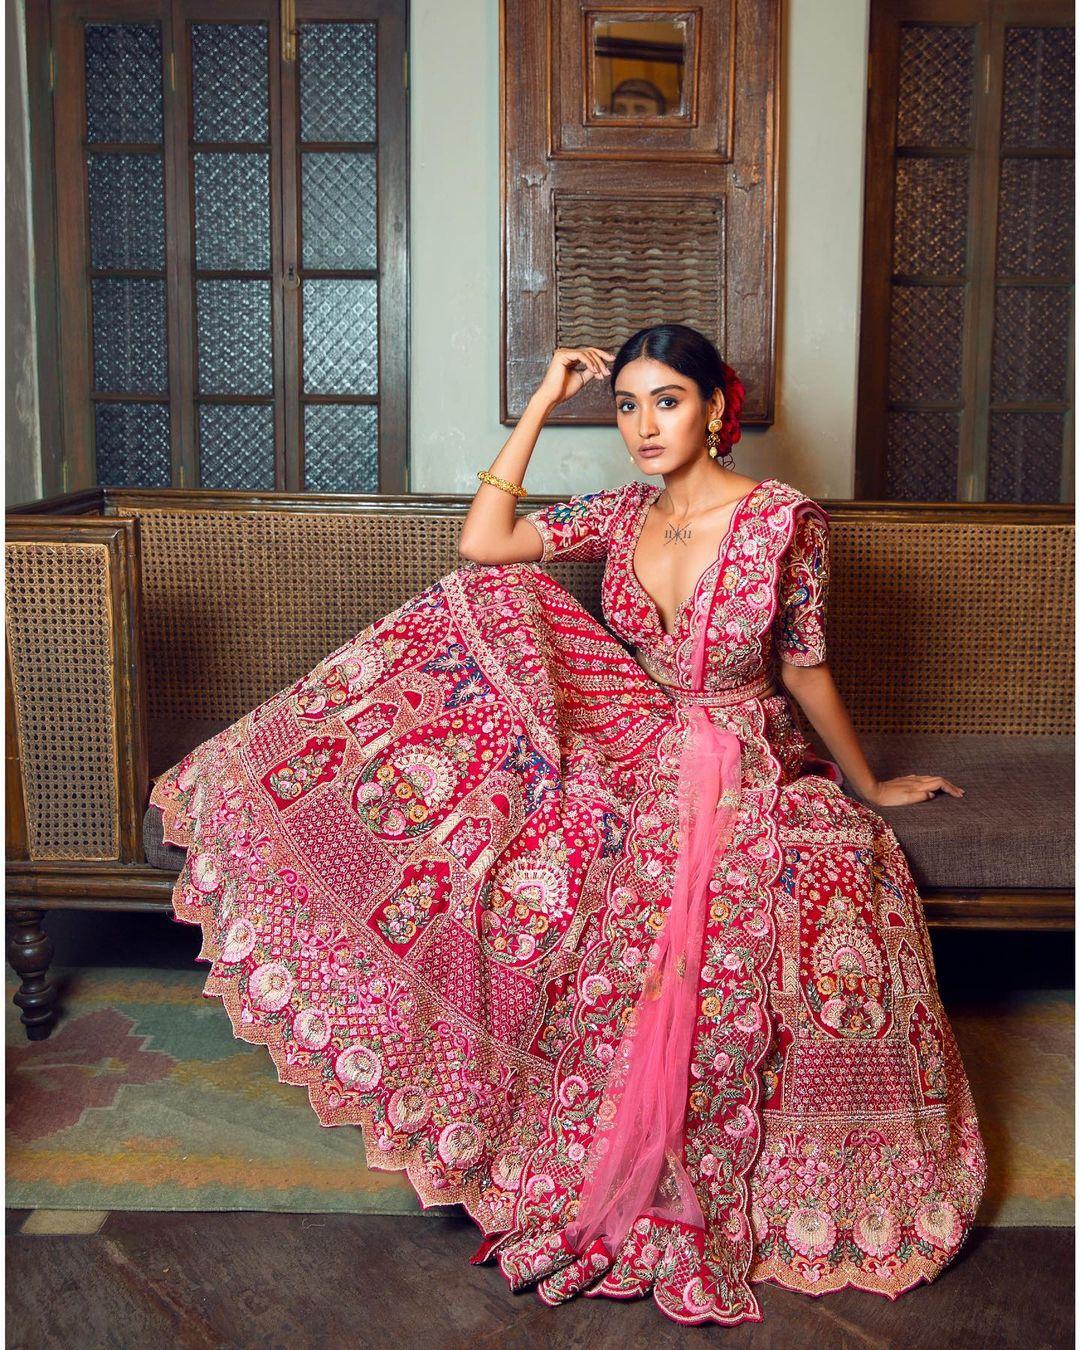 Pink Ruffled Style Sequins Embellished Lehenga Choli Latest 2137LG02